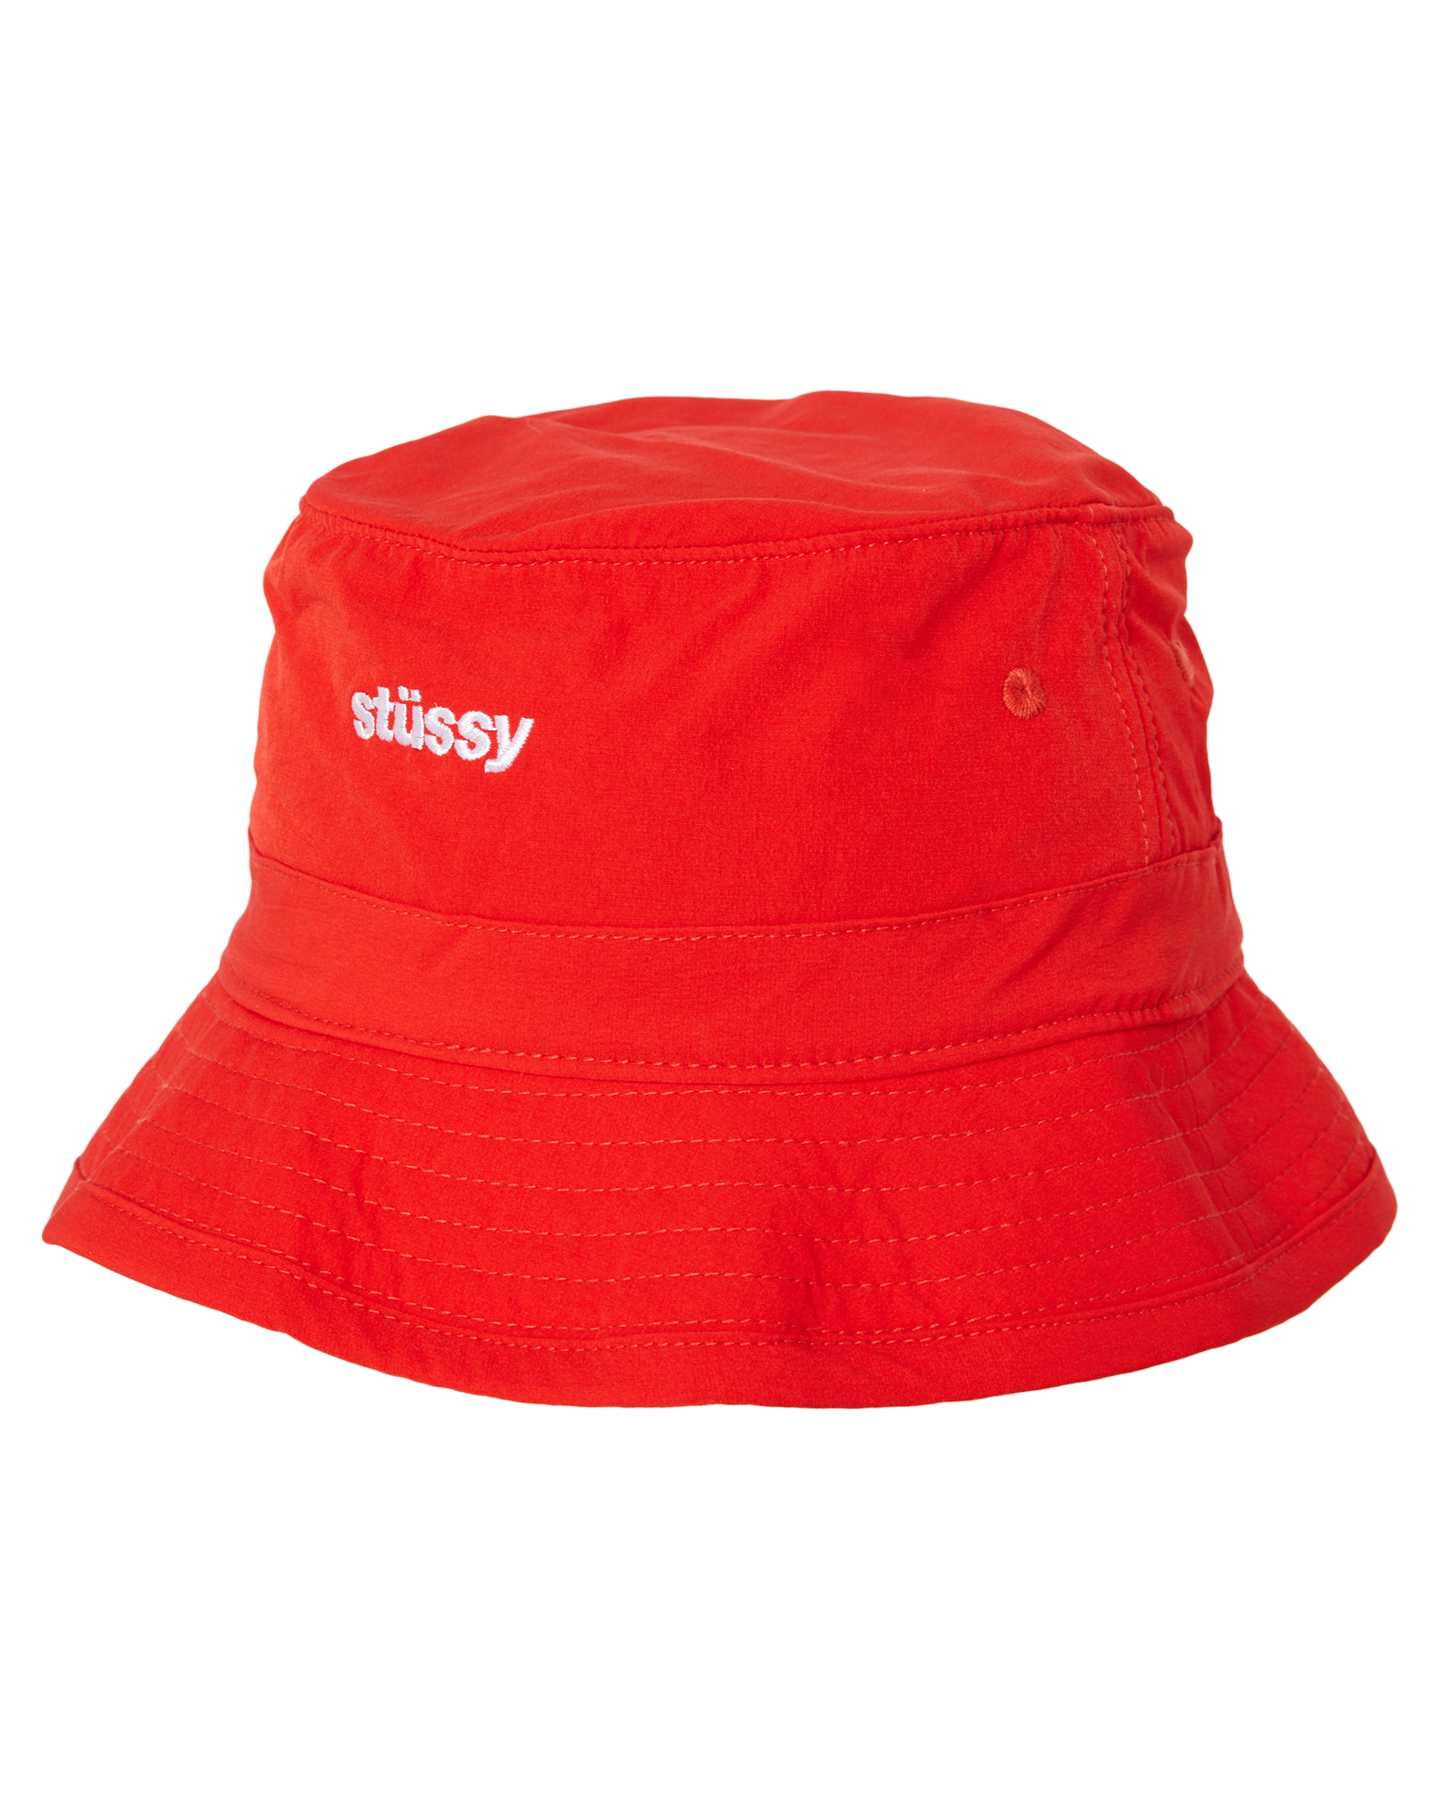 Stussy Italic Bungee Bucket Hat - Red | SurfStitch